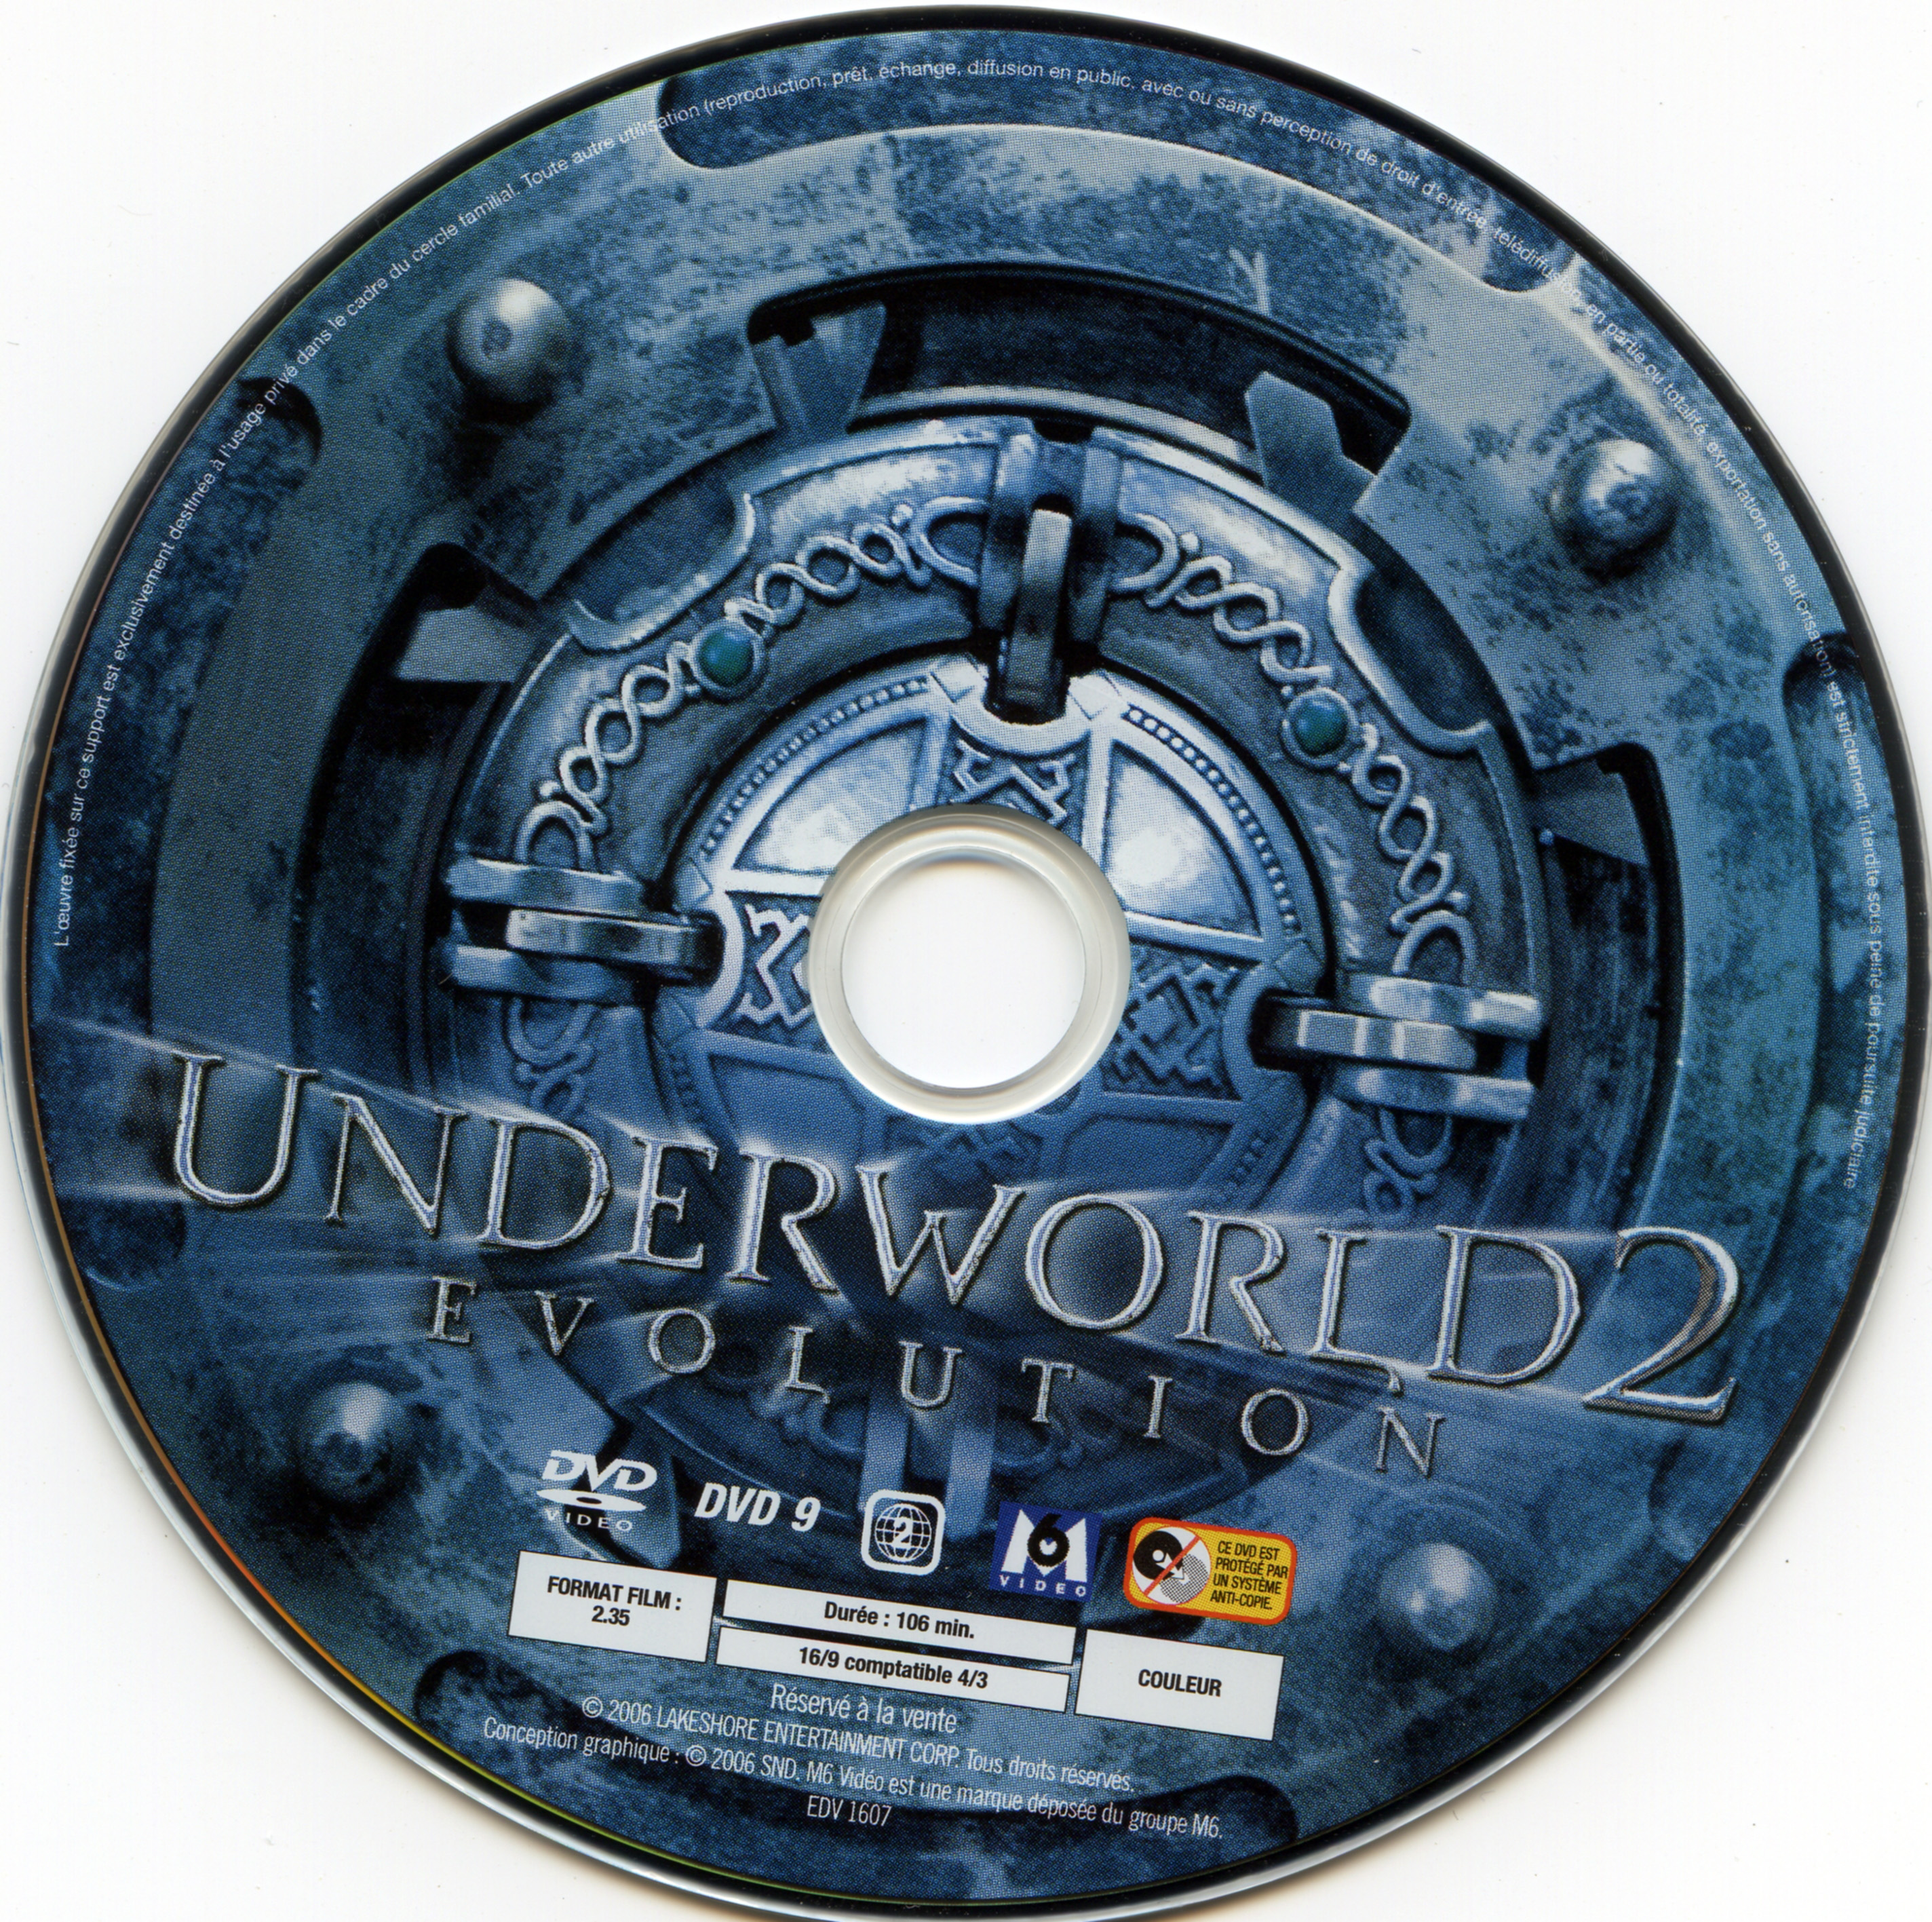 Underworld evolution DISC 1